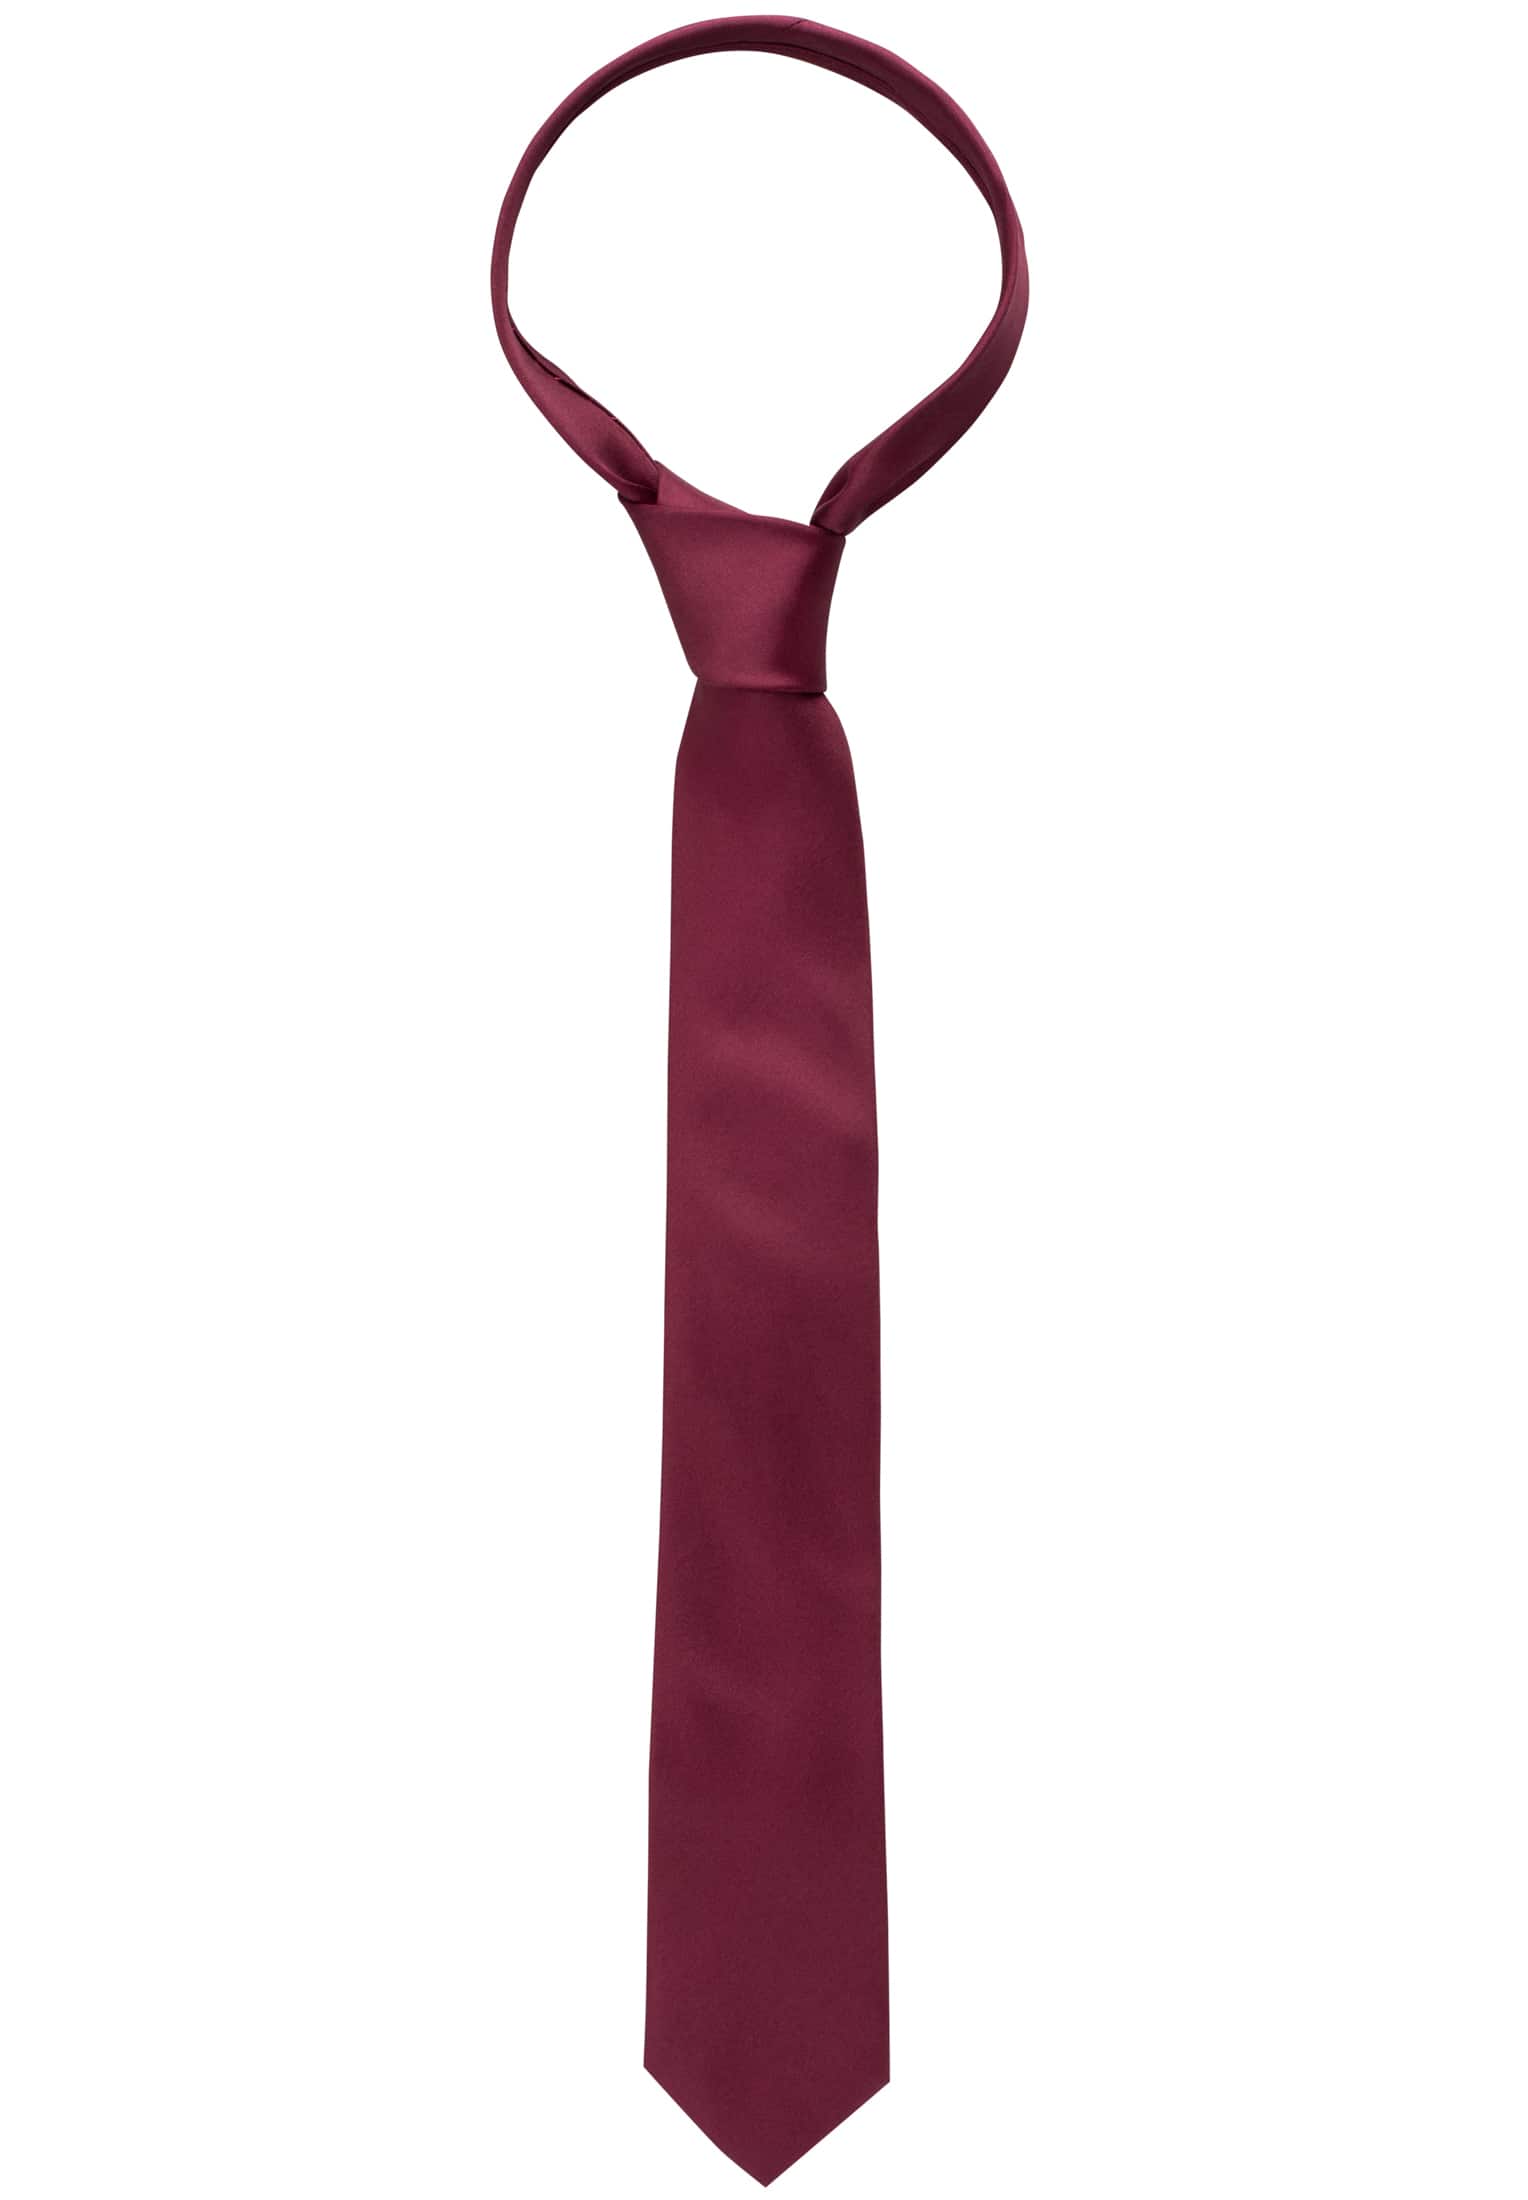 Krawatte in weinrot | unifarben weinrot | 1AC00025-05-62-142 | 142